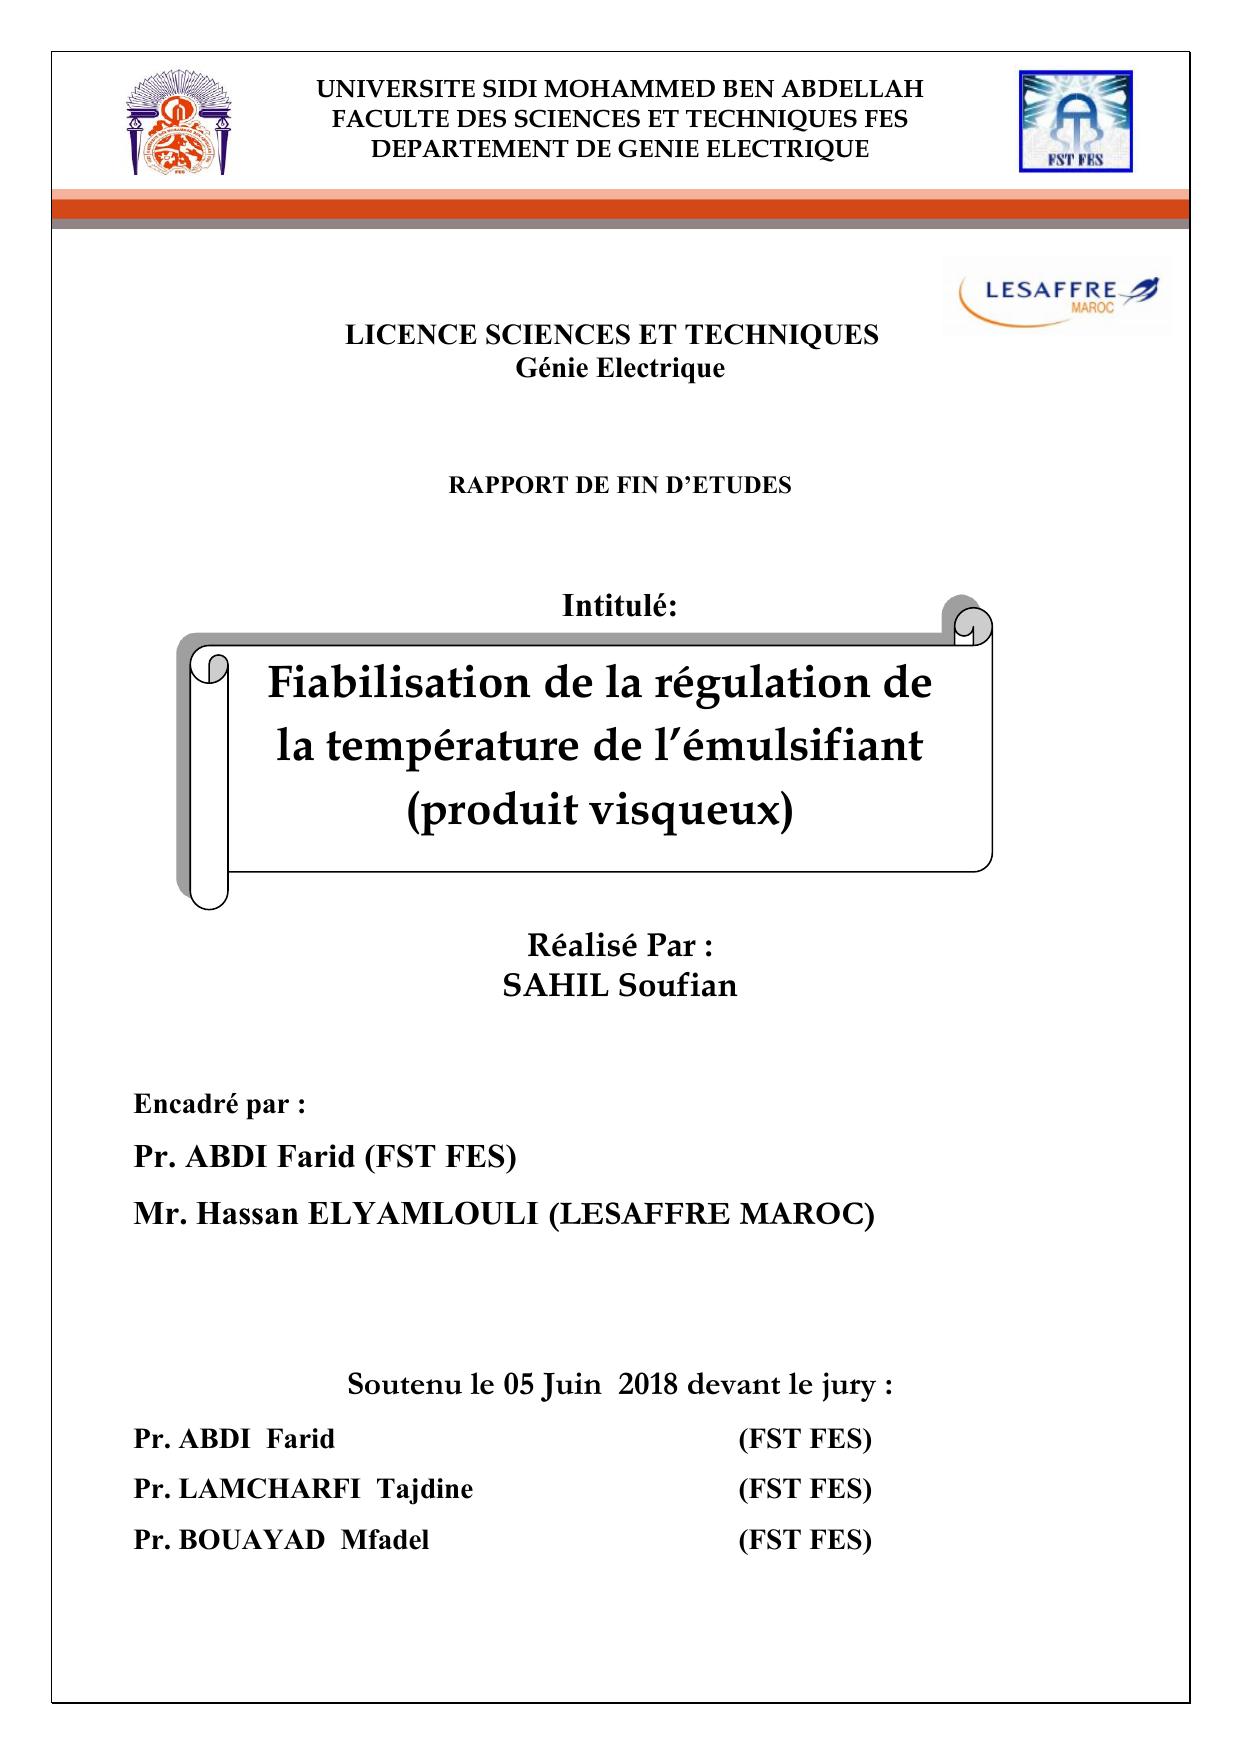 Fiabilisation de la régulation de la température de l’émulsifiant (produit visqueux)